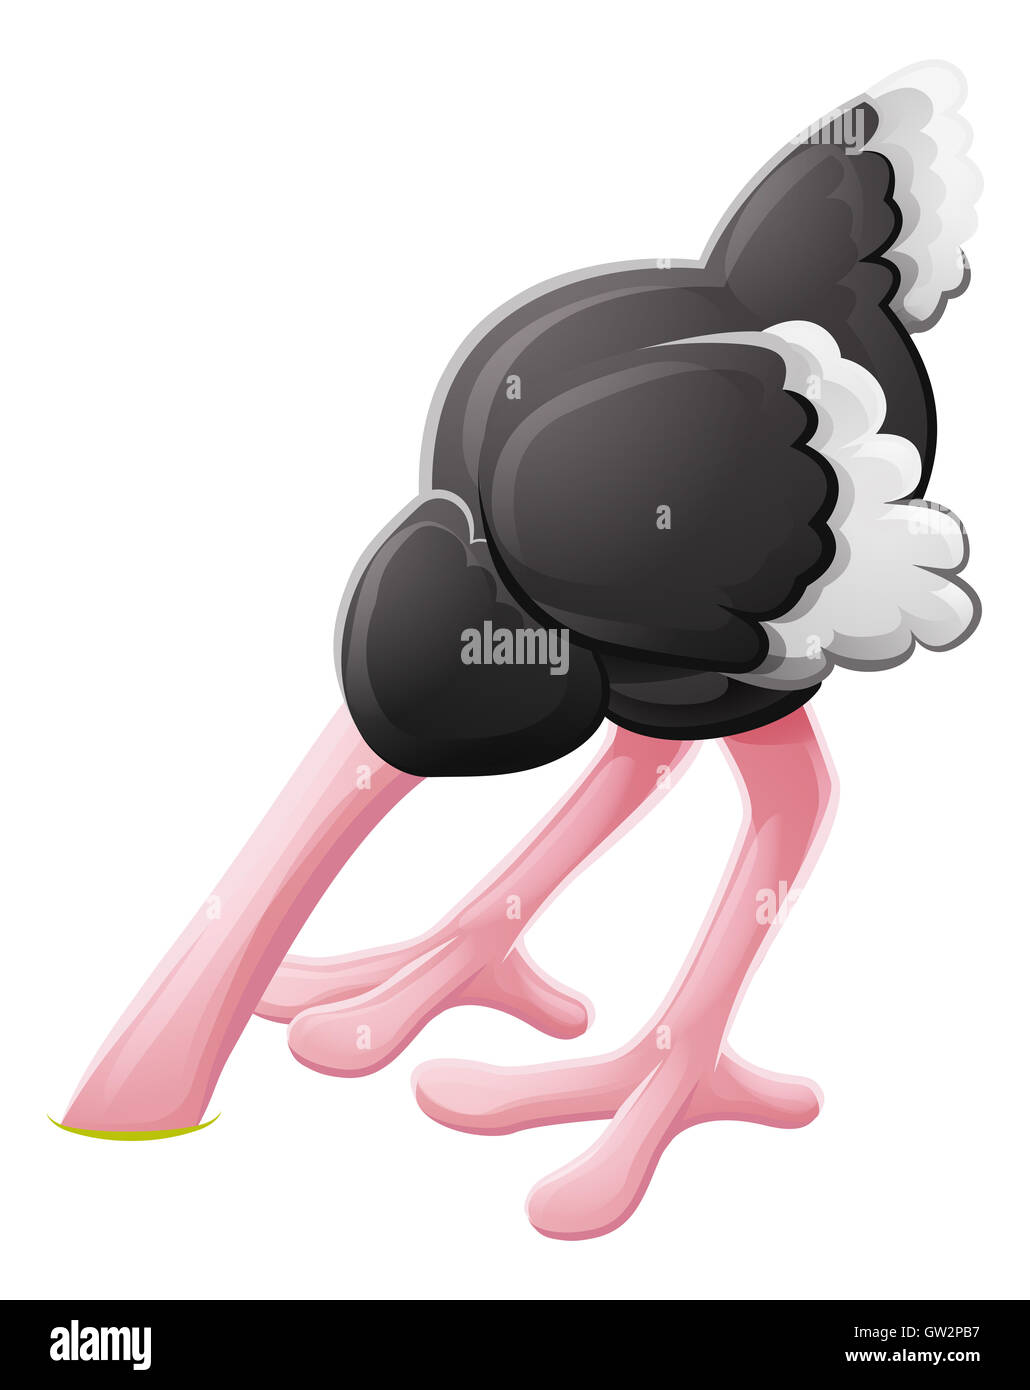 Une peur d'oiseaux autruche avec sa tête enfouie animal cartoon character mascot Banque D'Images